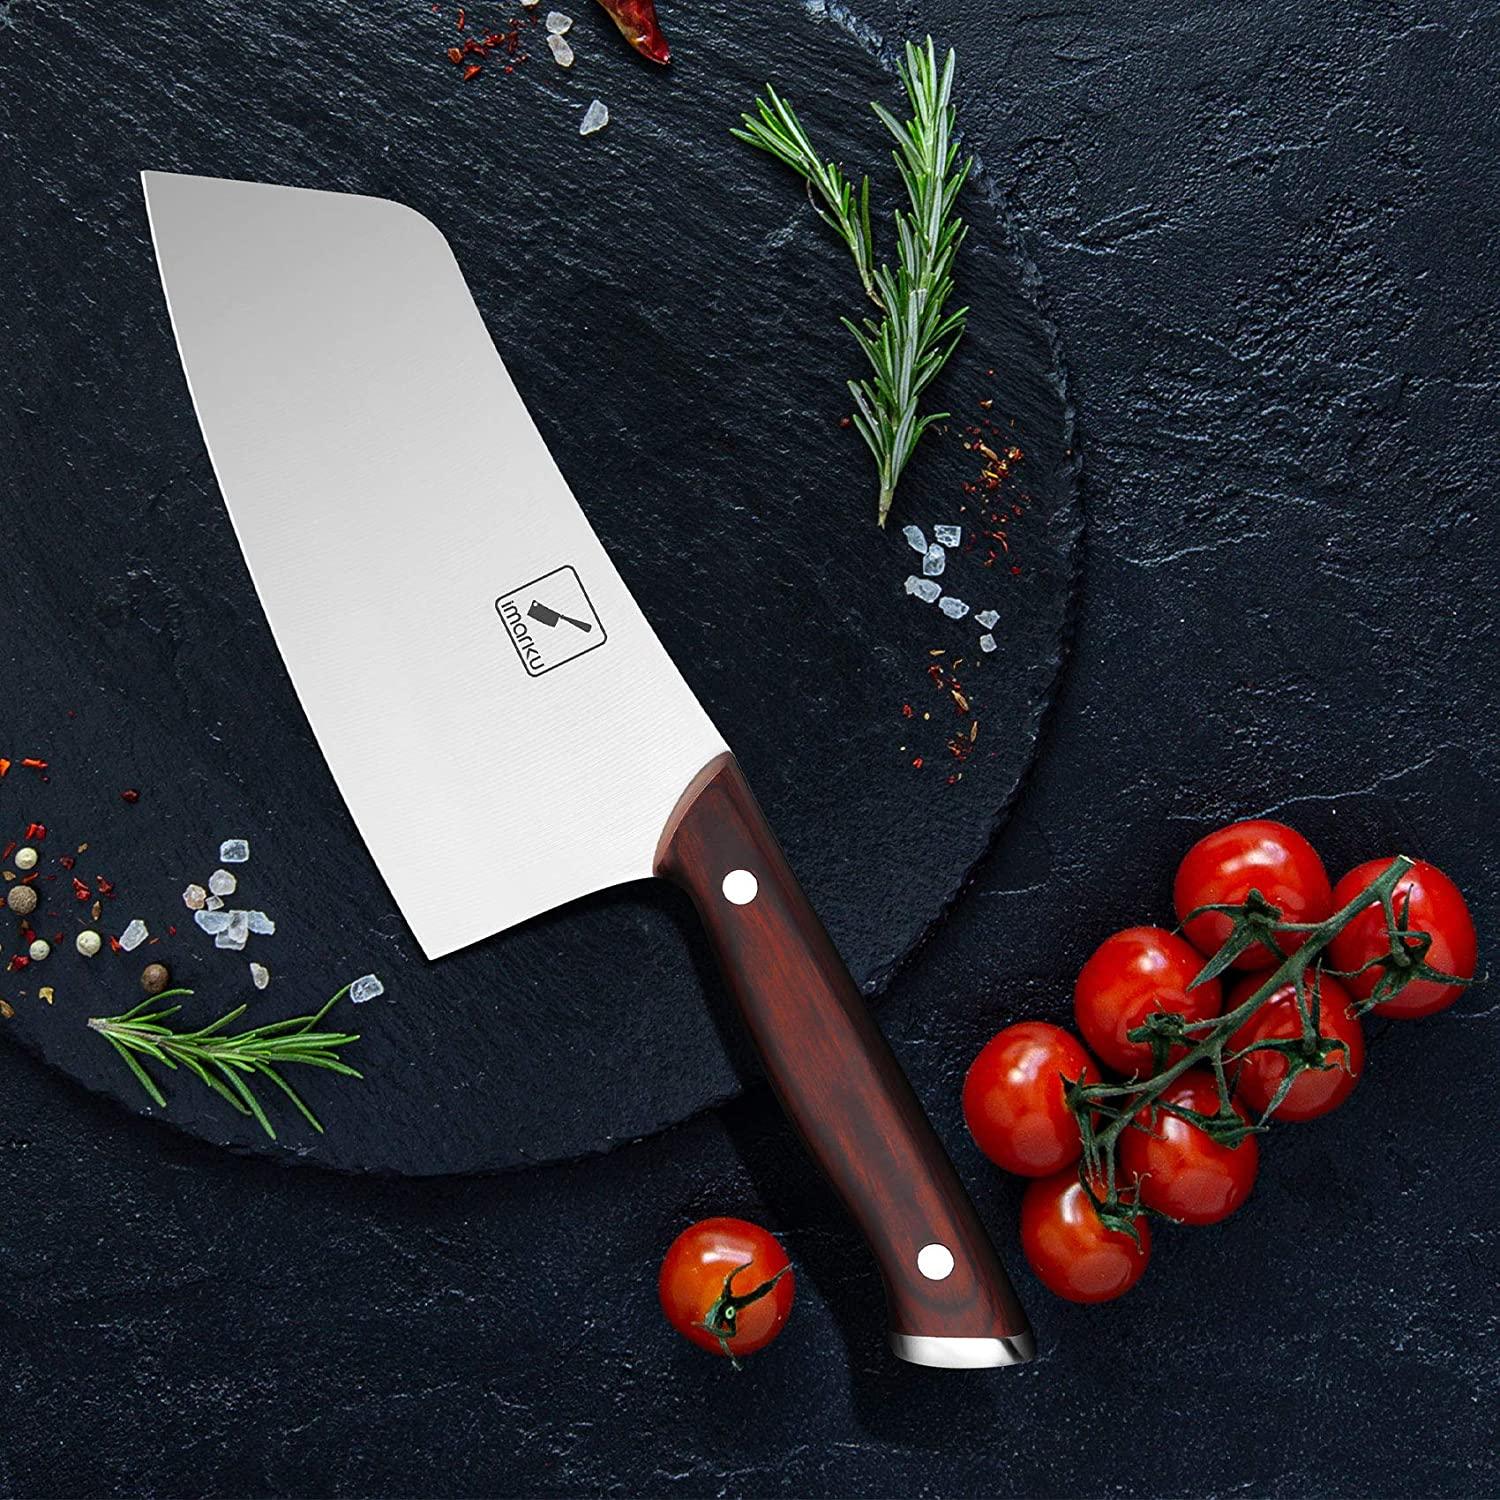 imarku 7-inch Vegetable Cleaver Knife - IMARKU